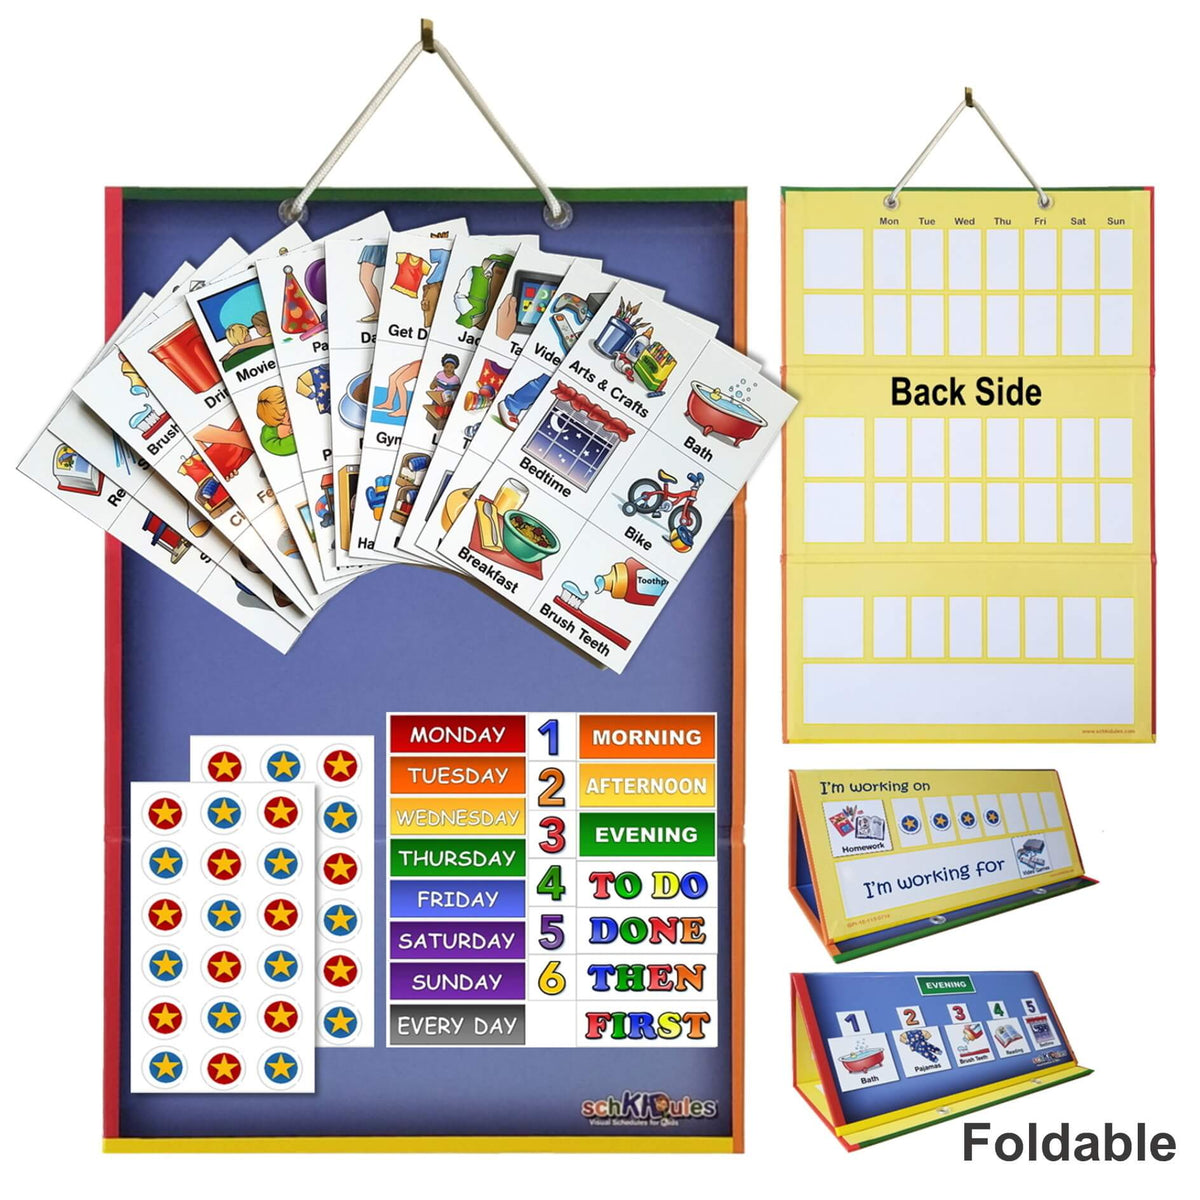 SchKIDules Home Bundle Visual Schedule System Planning Organisation